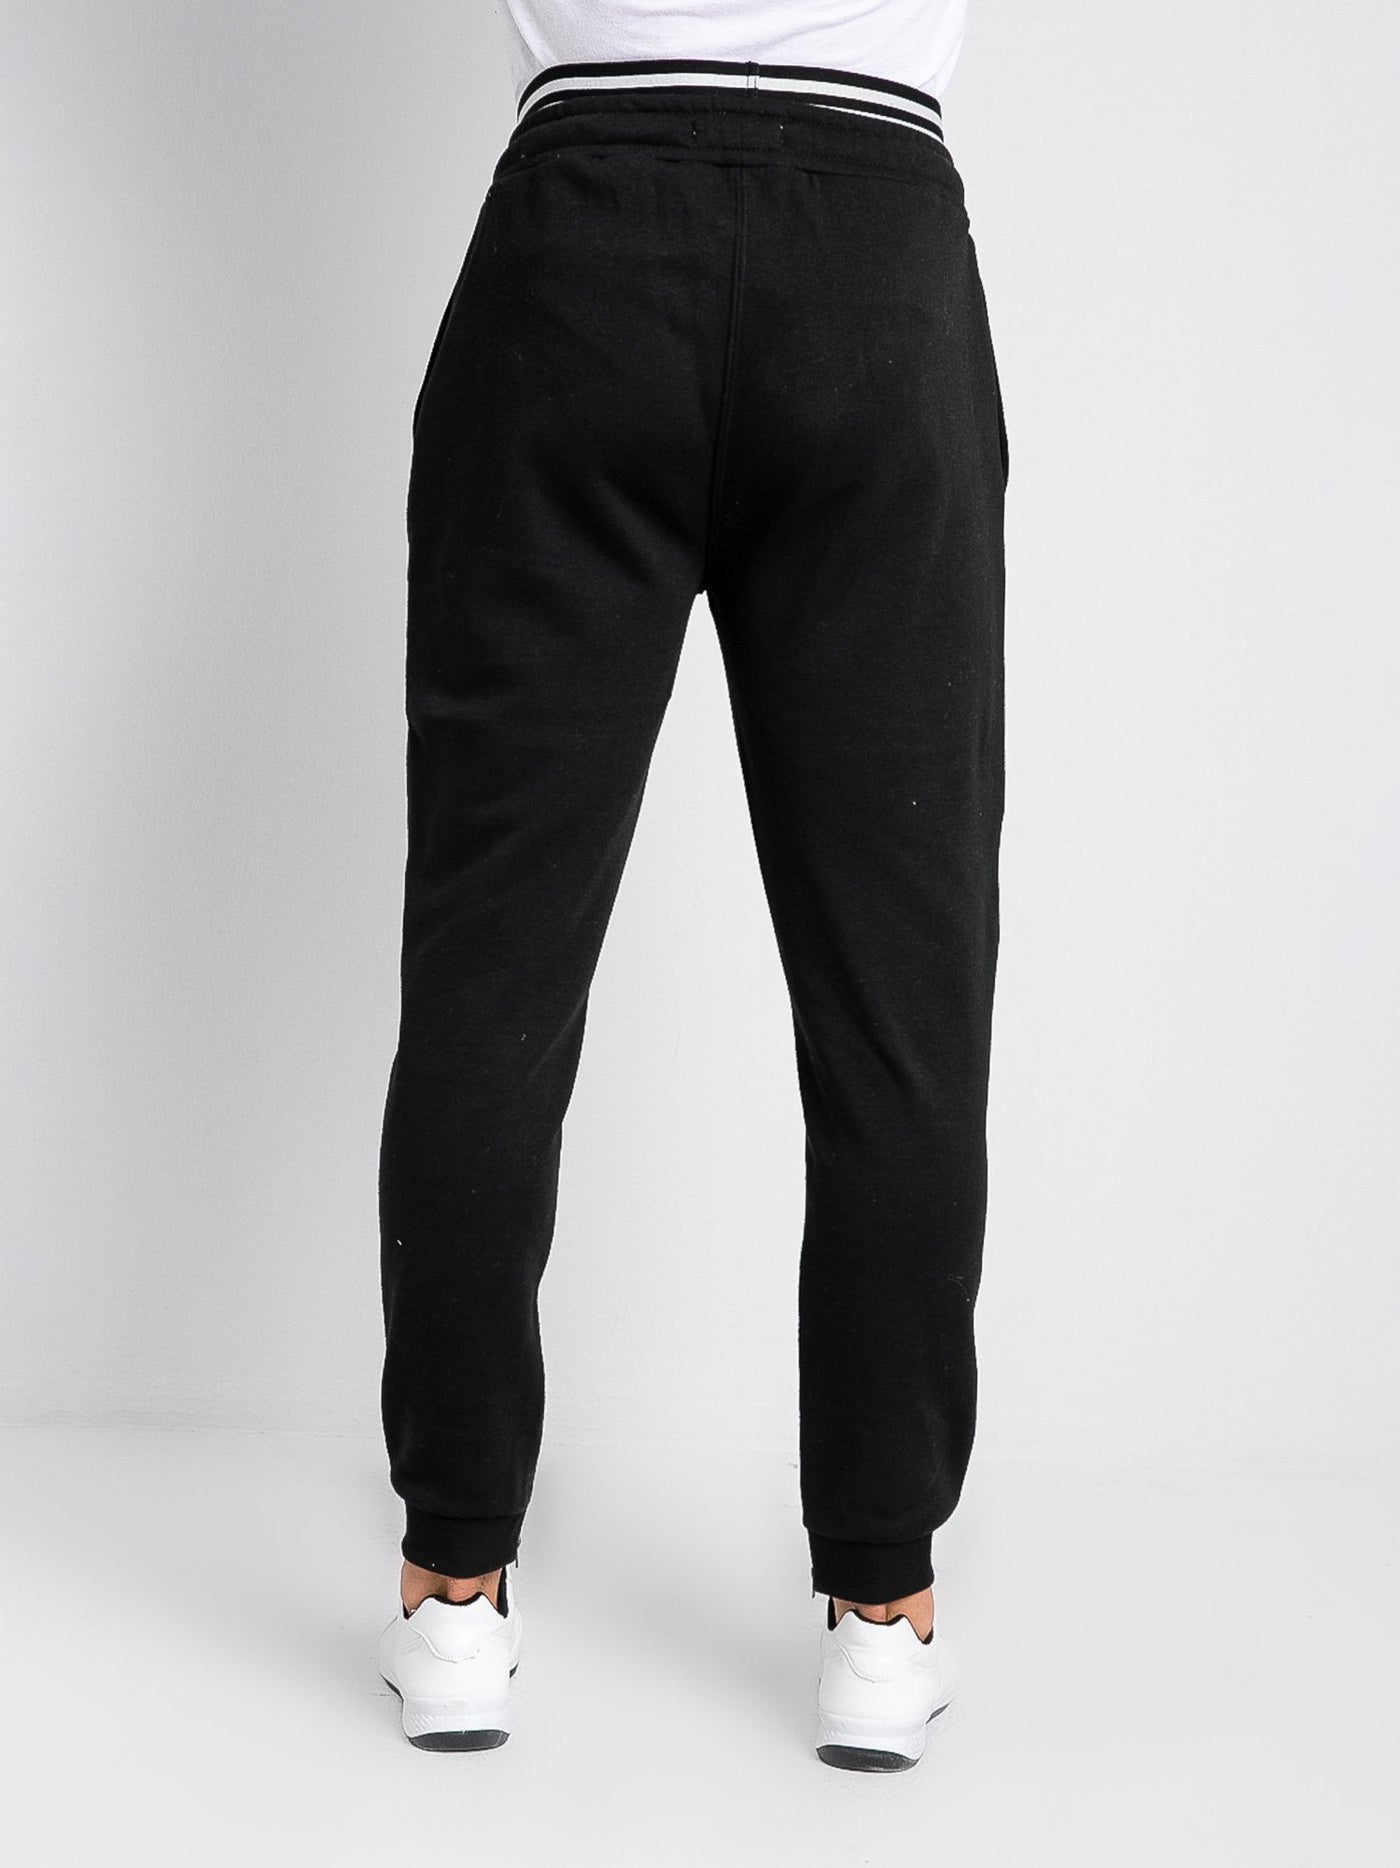 Premoda Mens Printed Zipper Hem Sweat Pants